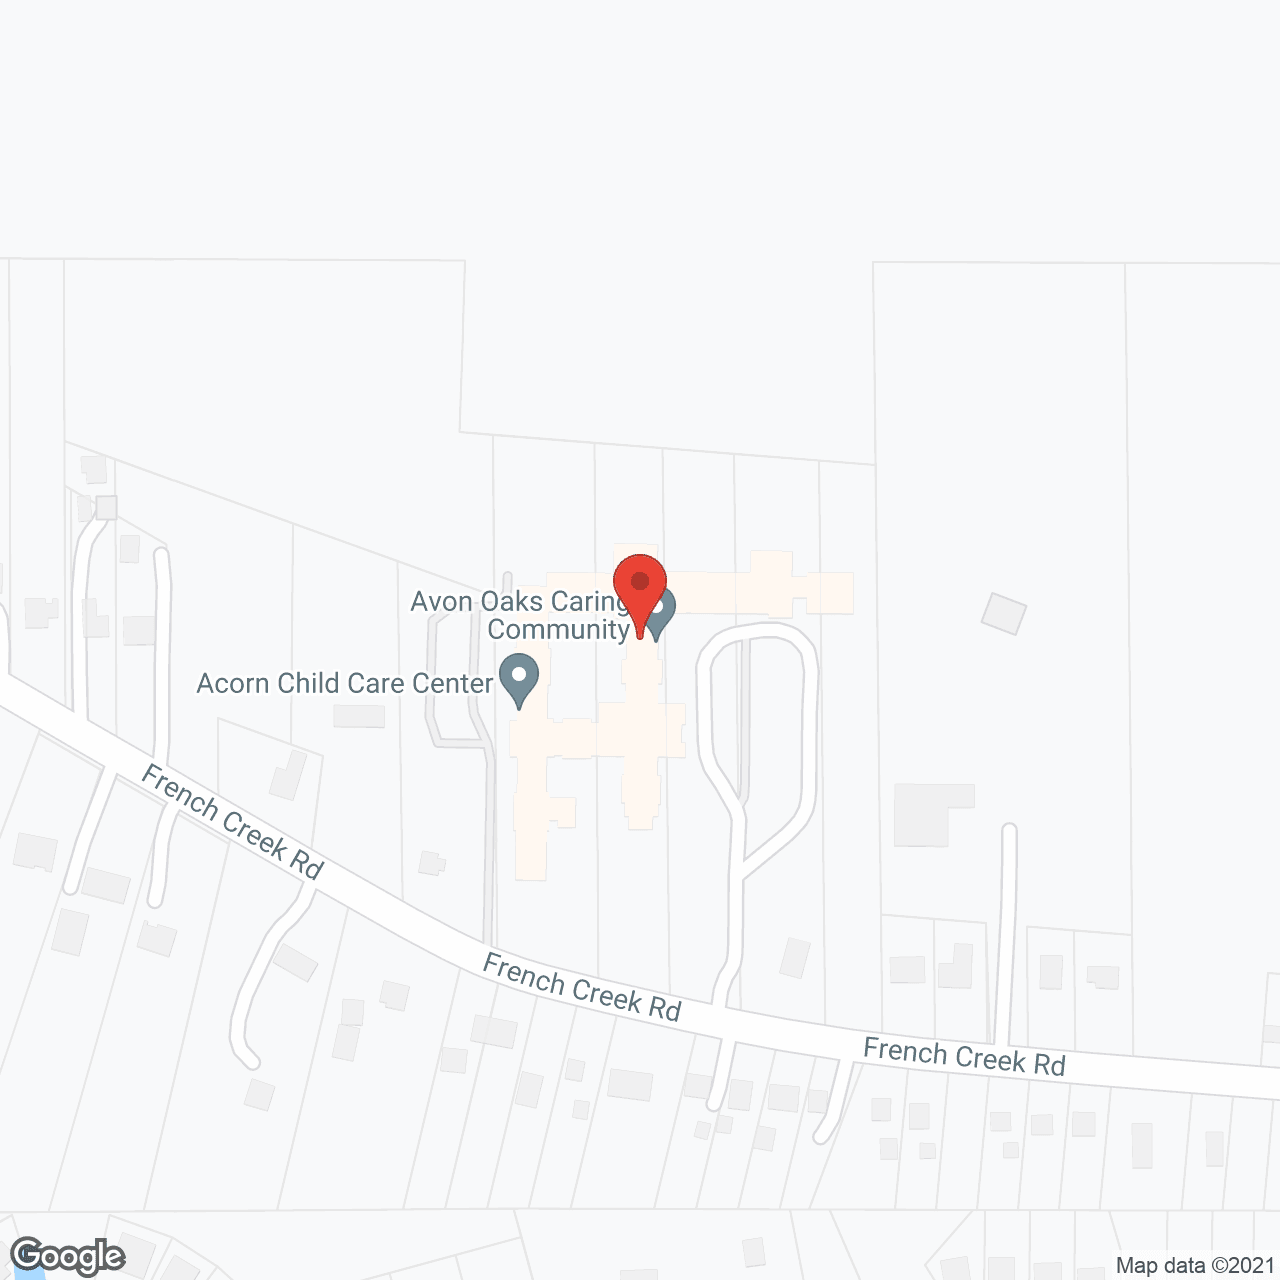 Avon Oaks in google map